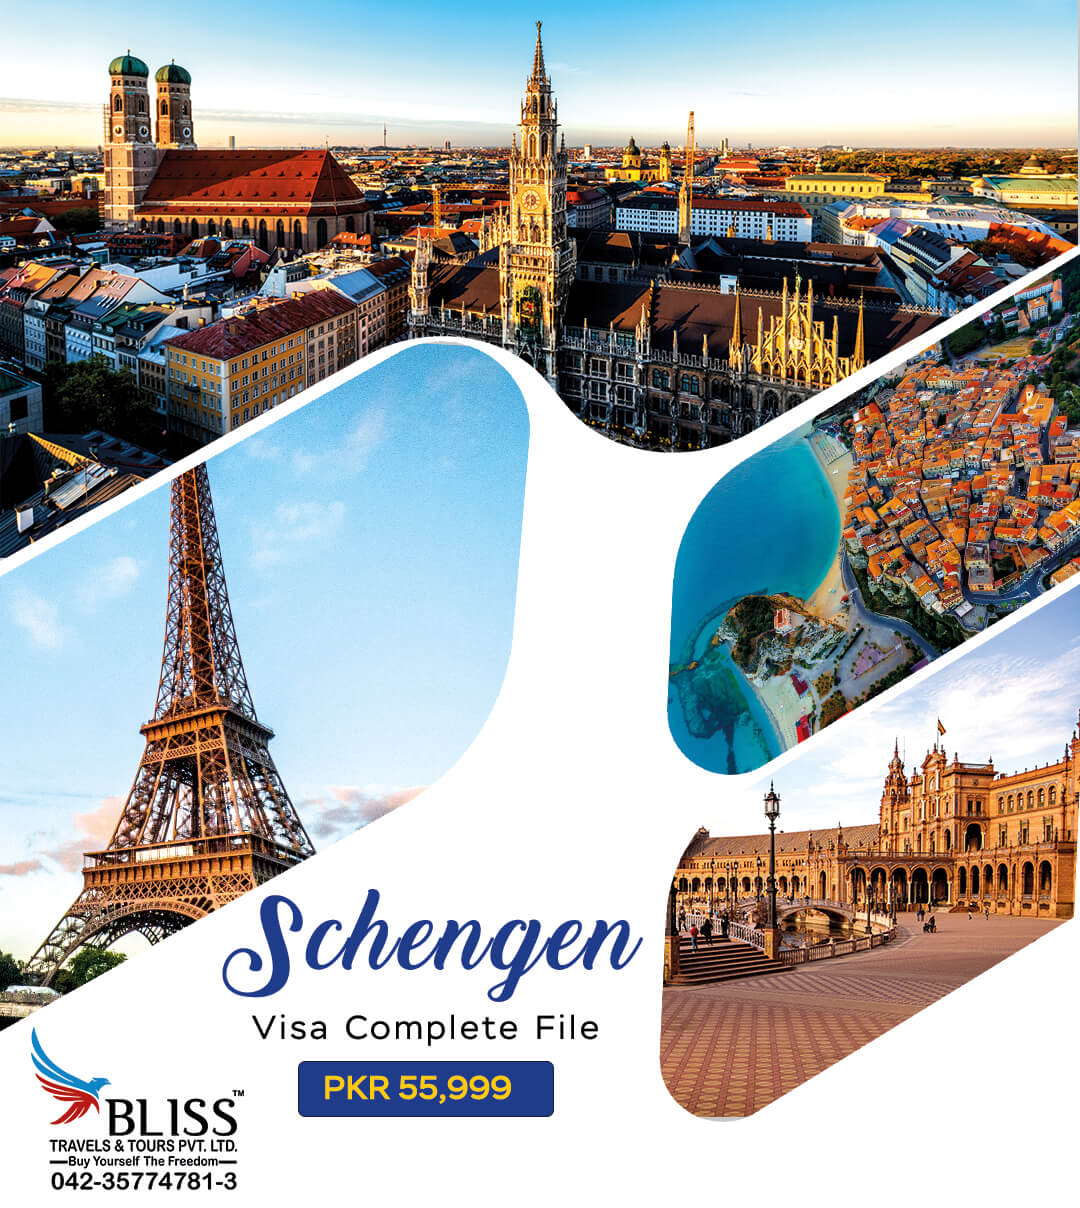 Schengen-Visa-Complete-File-in-Just-PKR-55,999